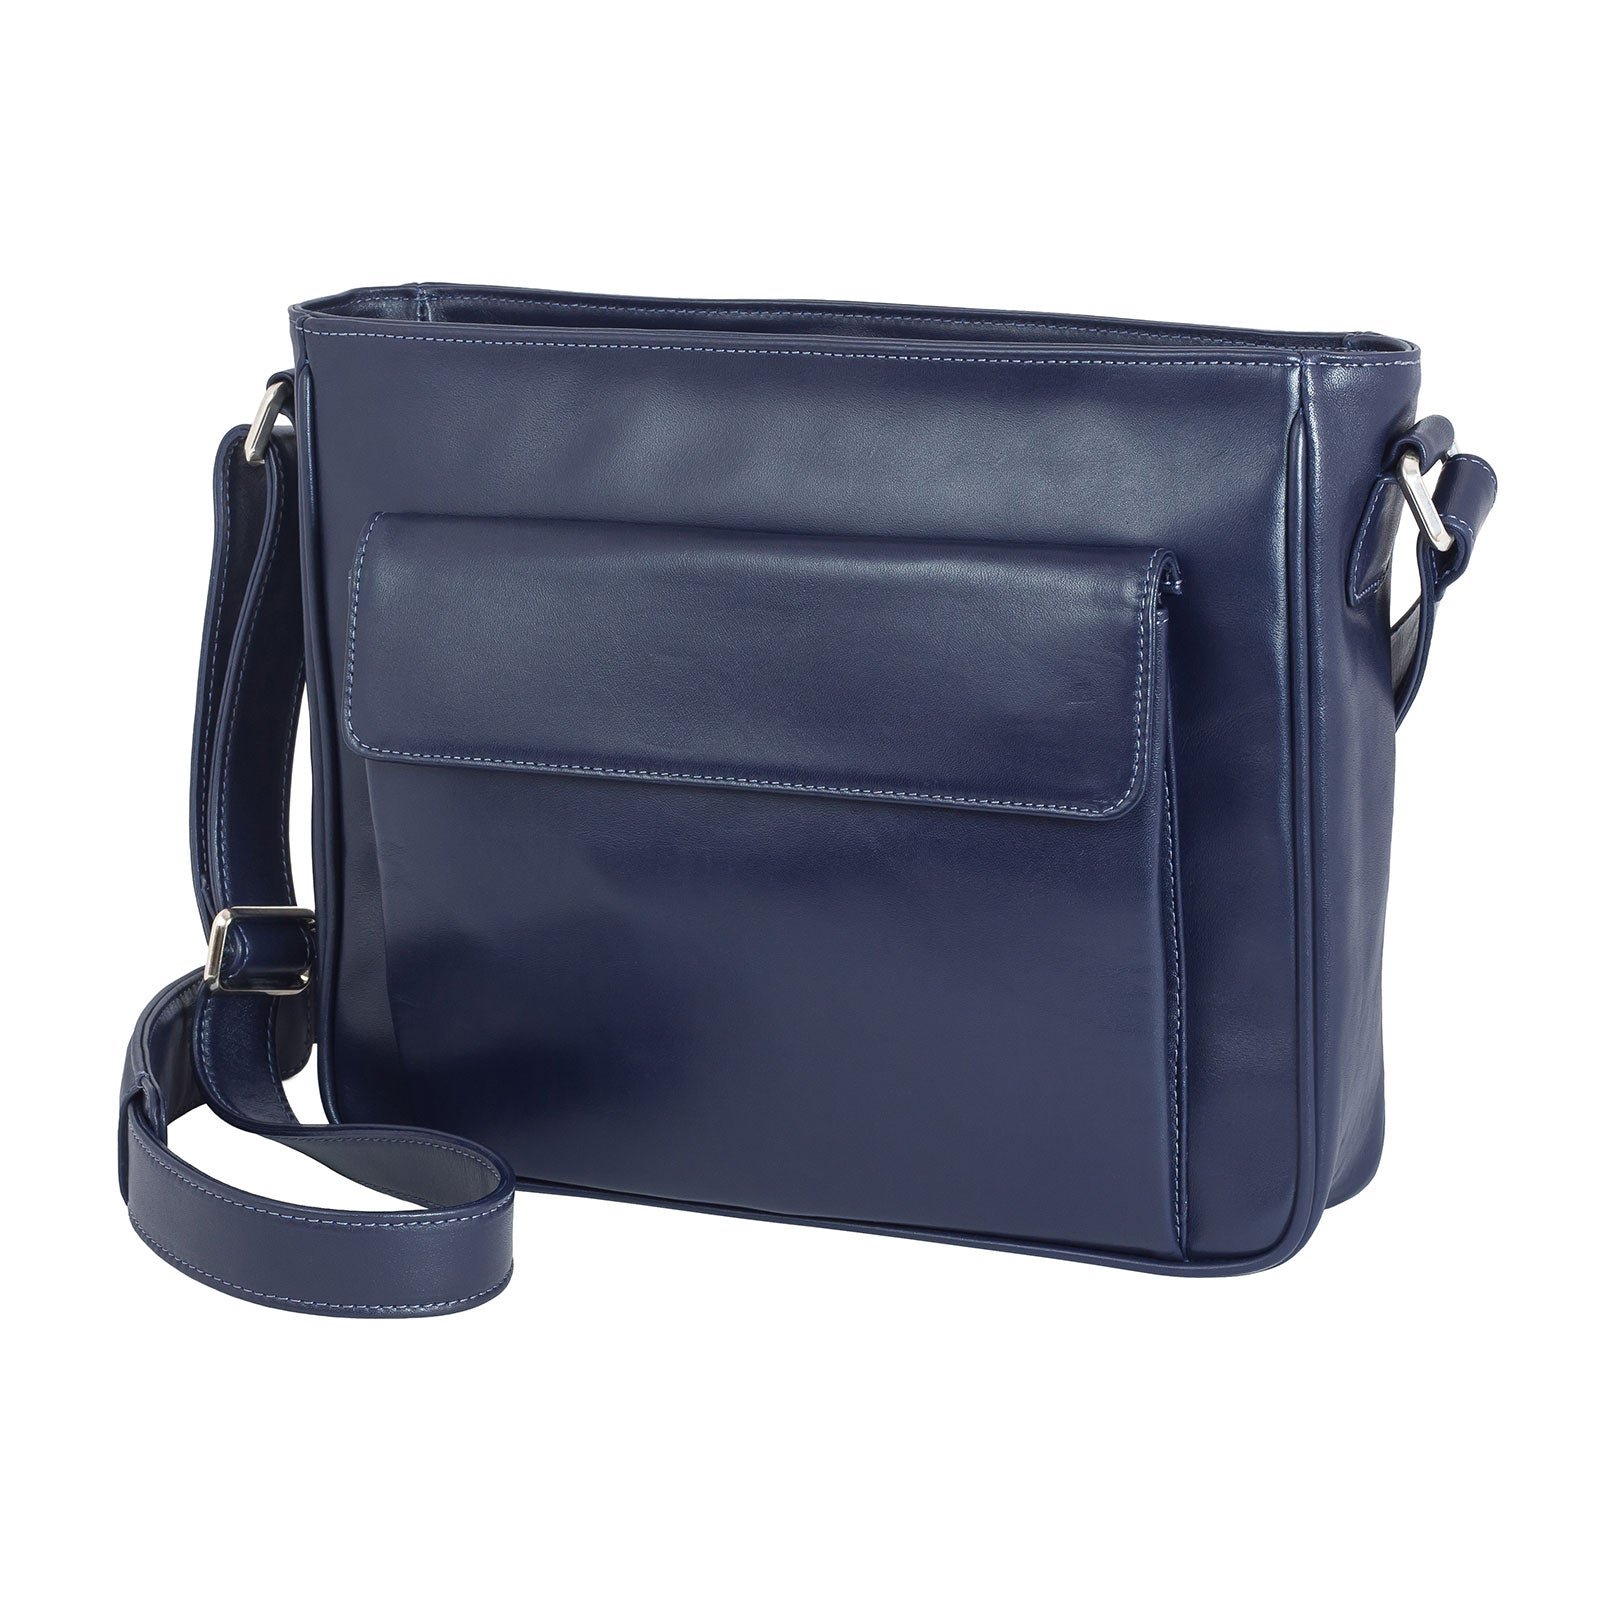 LS-Handbag-Blue-FRONT_634b1053-20e8-4900-8dcf-2c267238ffdd_1600x1600.jpg